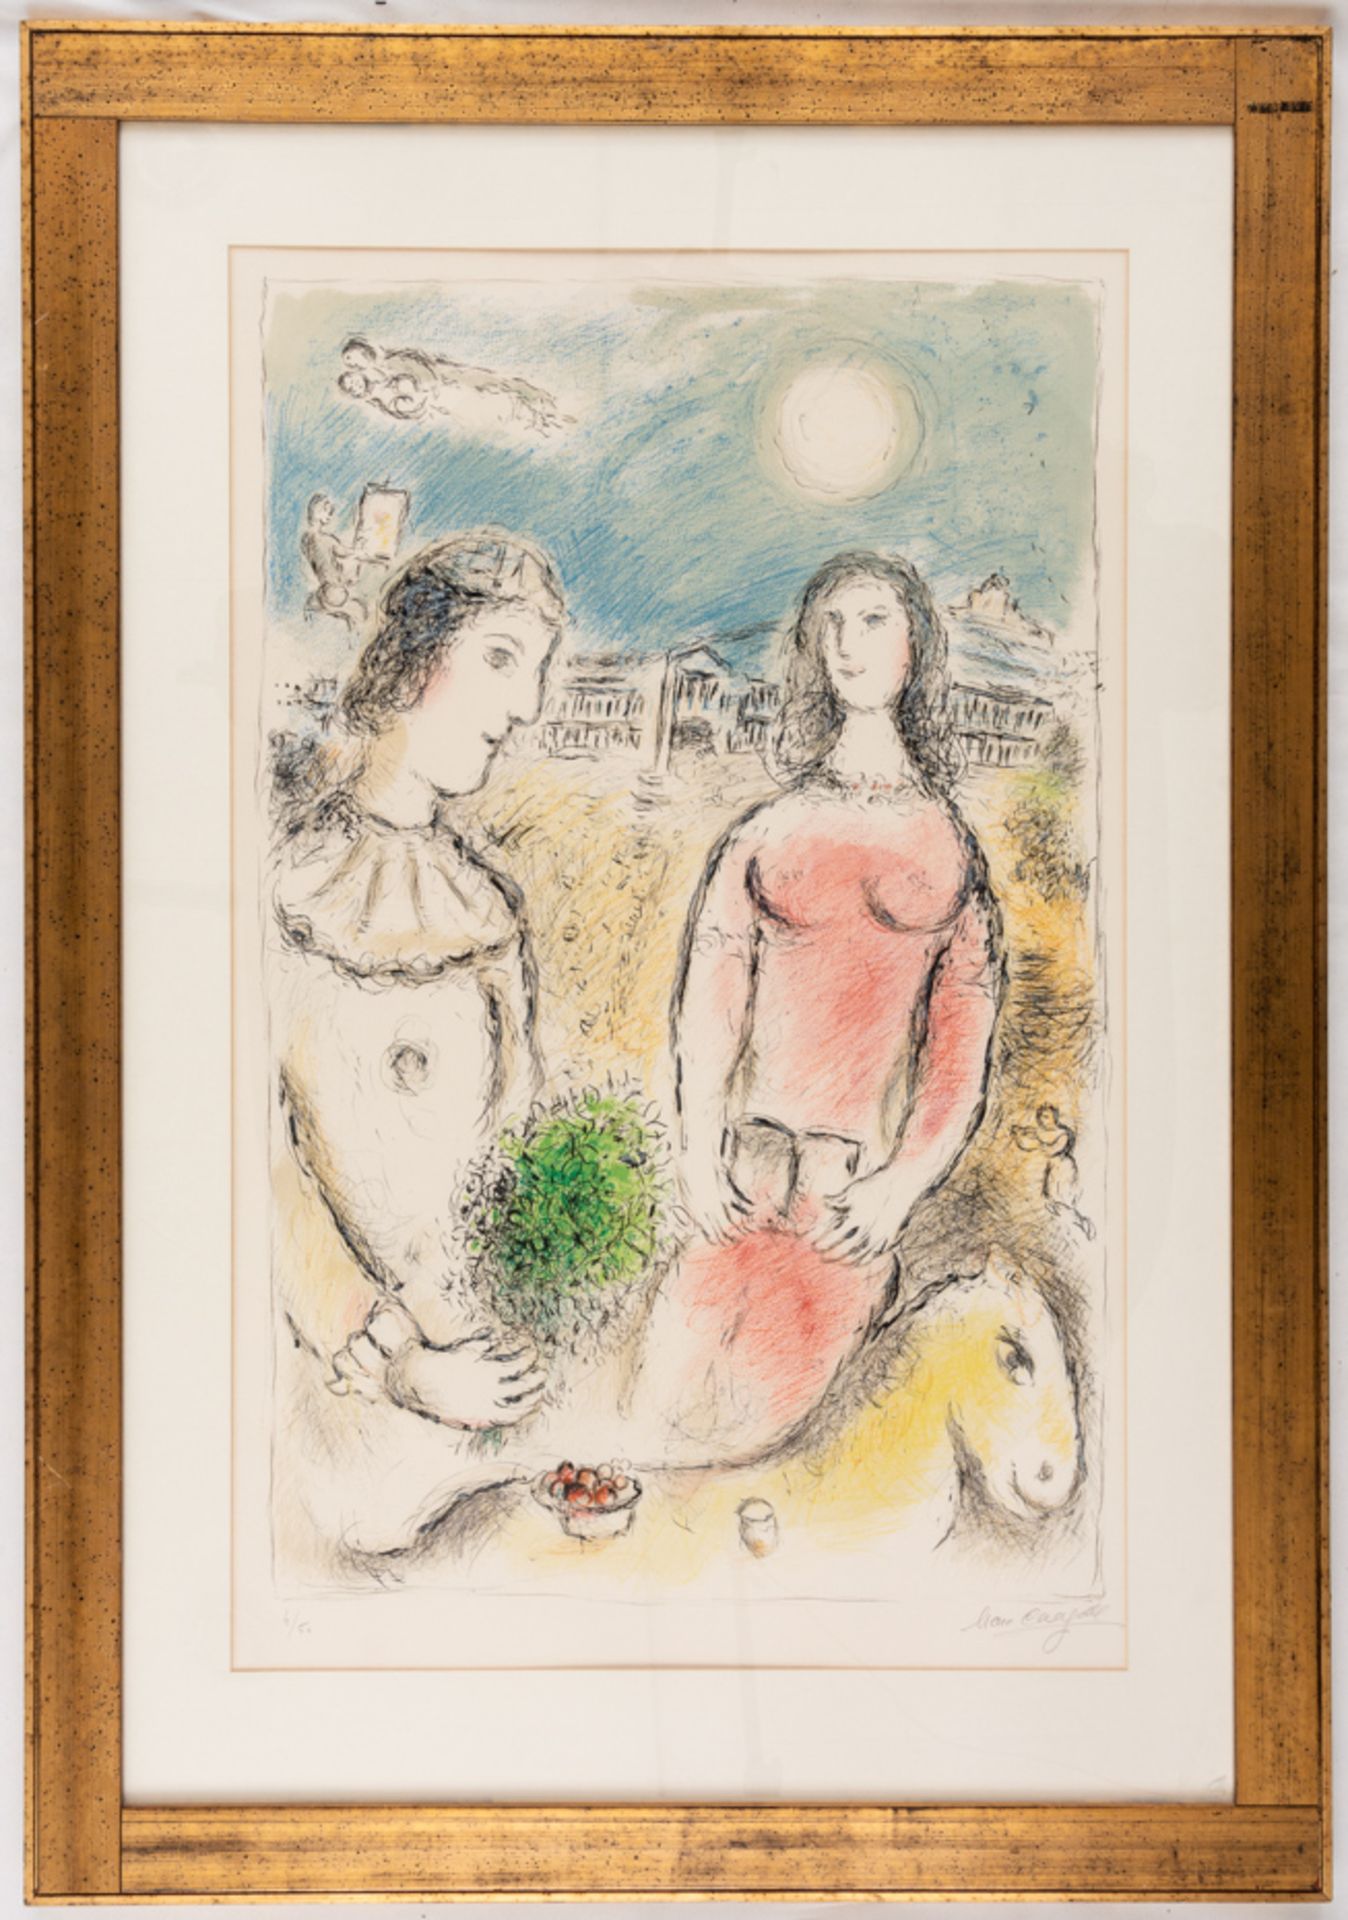 Marc CHAGALL (1887-1985), Le couple au crépuscule, sehr grosse Farblithographie, signiert - Bild 2 aus 3